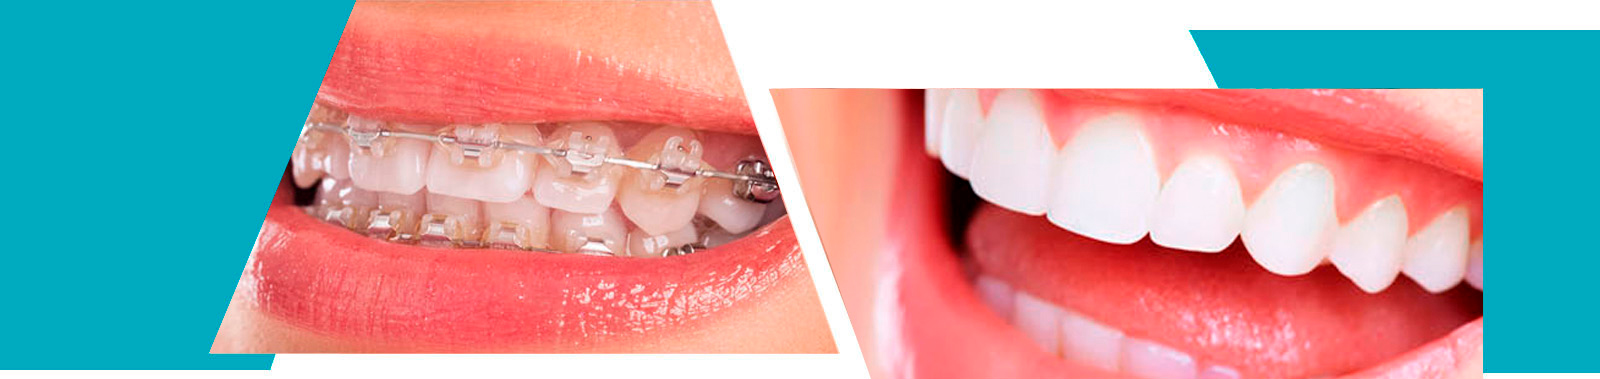 Ortodoncia Exclusiva Dra. María Jesús Díez García collage imagen 2